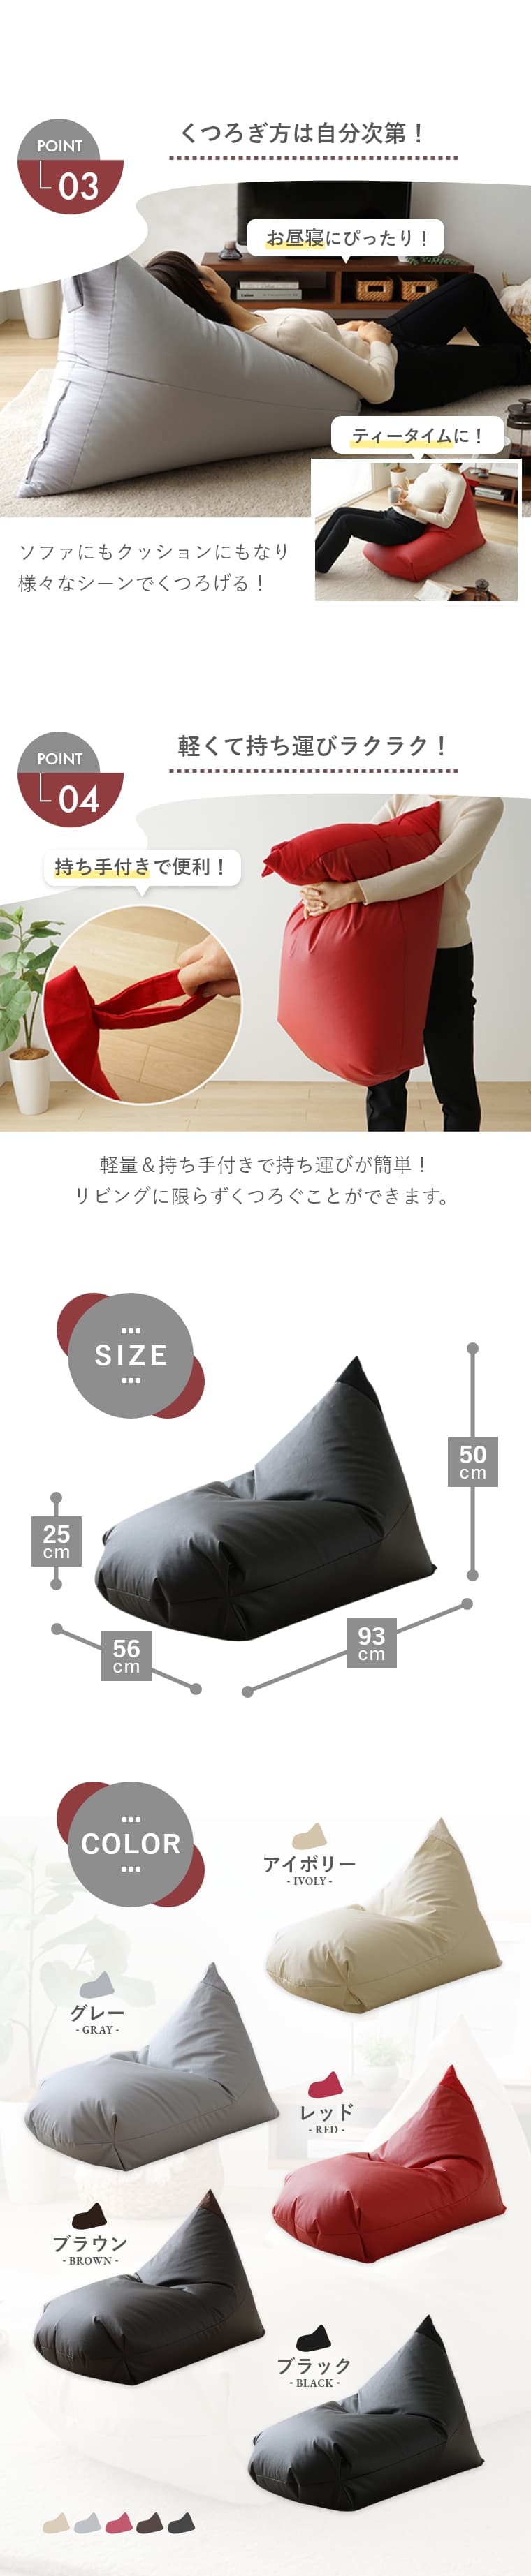 レザーカバーの高級感とちょうどいい座り心地の日本製ビーズクッション